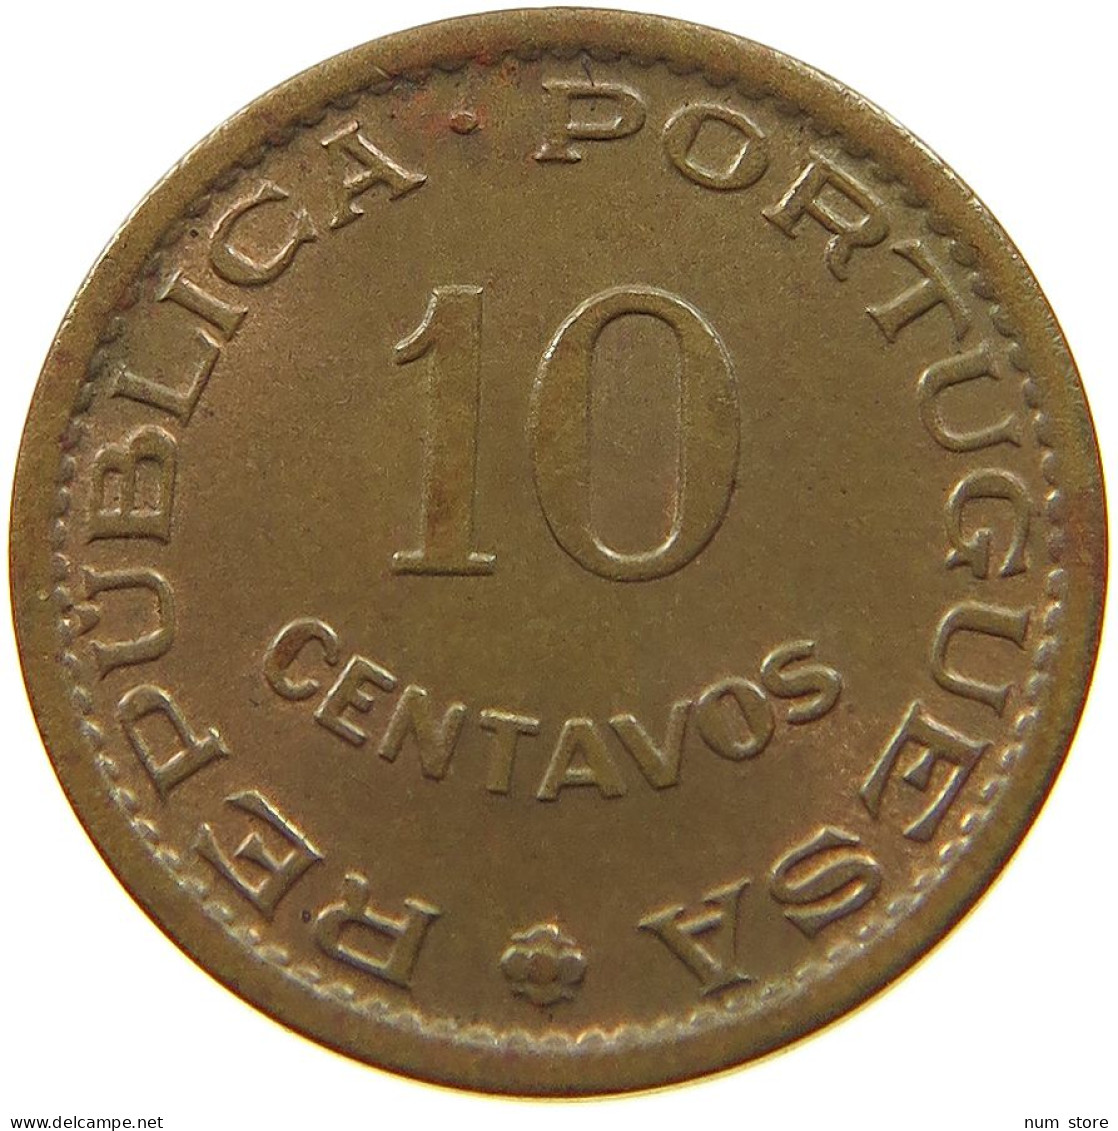 ST. THOMAS AND PRINCE 10 CENTAVOS 1962  #t064 0029 - Sao Tomé E Principe